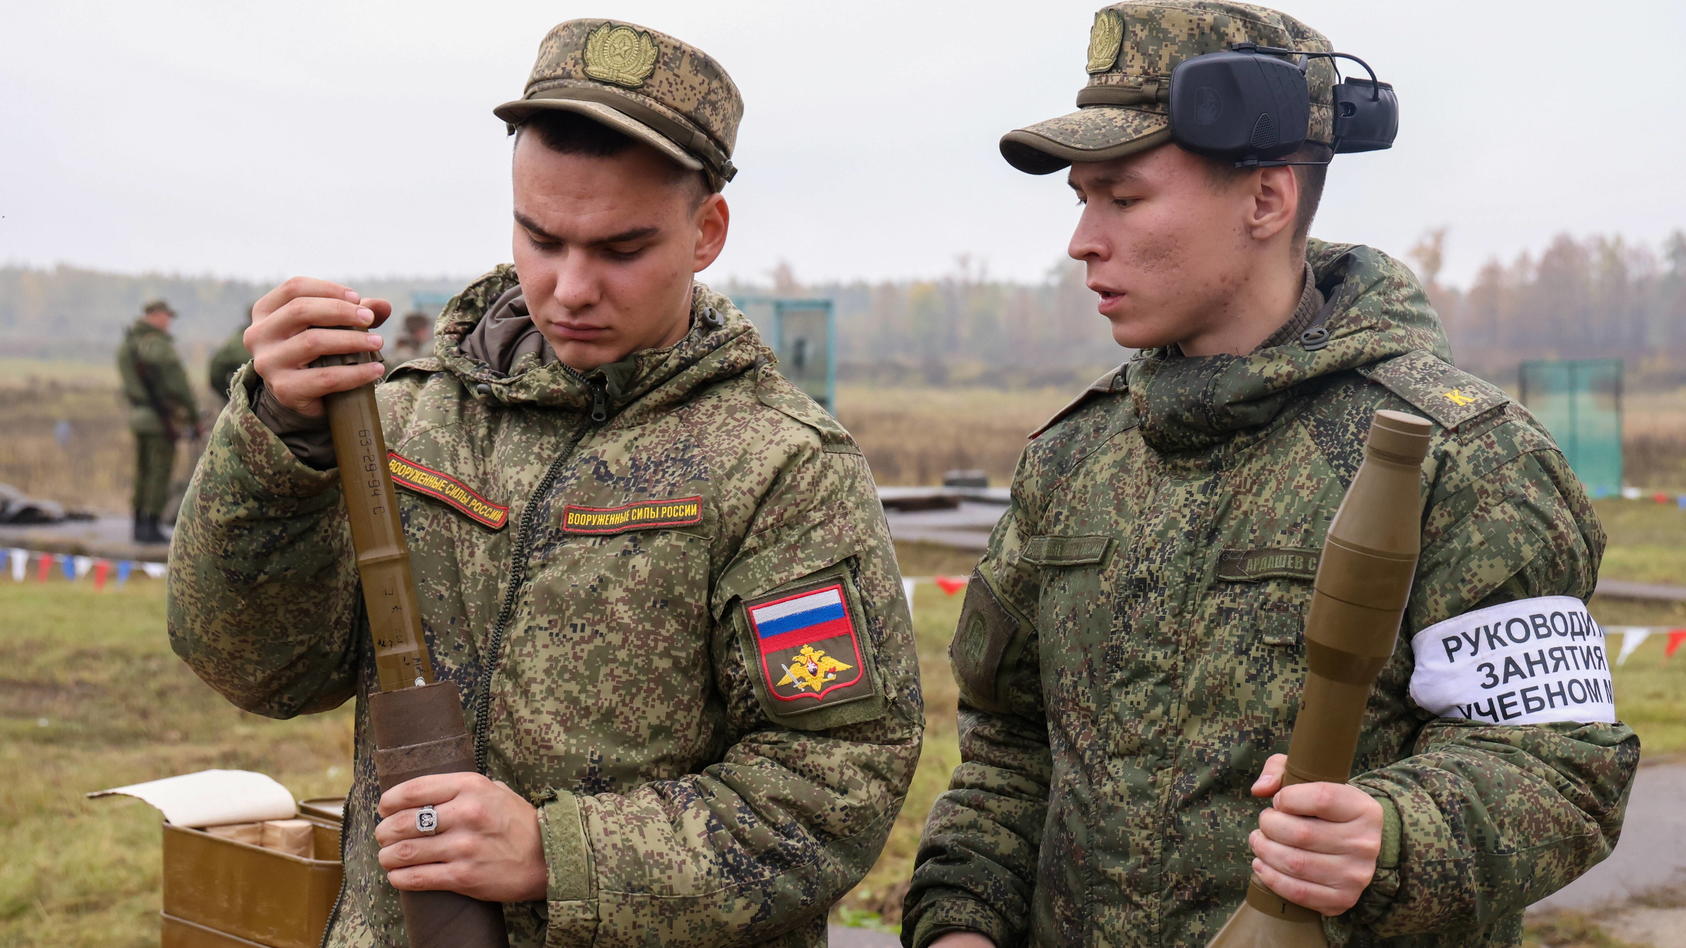 mobilisierte-reservisten-der-russischen-armee-bei-einer-trainingseinheit-doch-vielerorts-geben-die-einberufenen-soldaten-ein-unprofessionelles-bild-ab